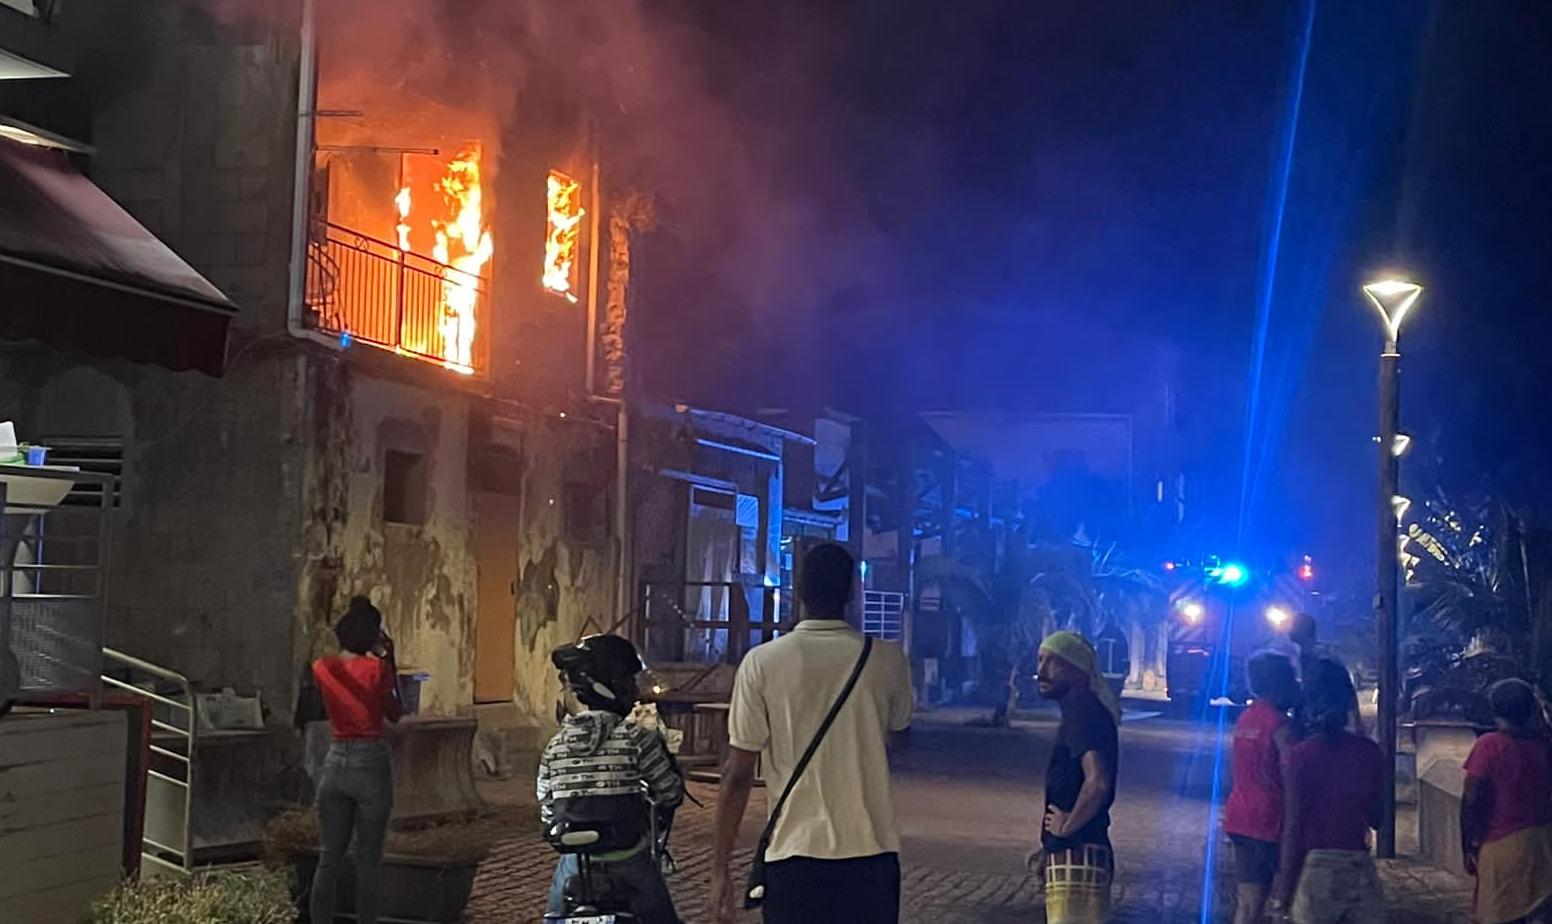     Une maison en feu à Saint-Pierre, ses occupants sains et saufs

